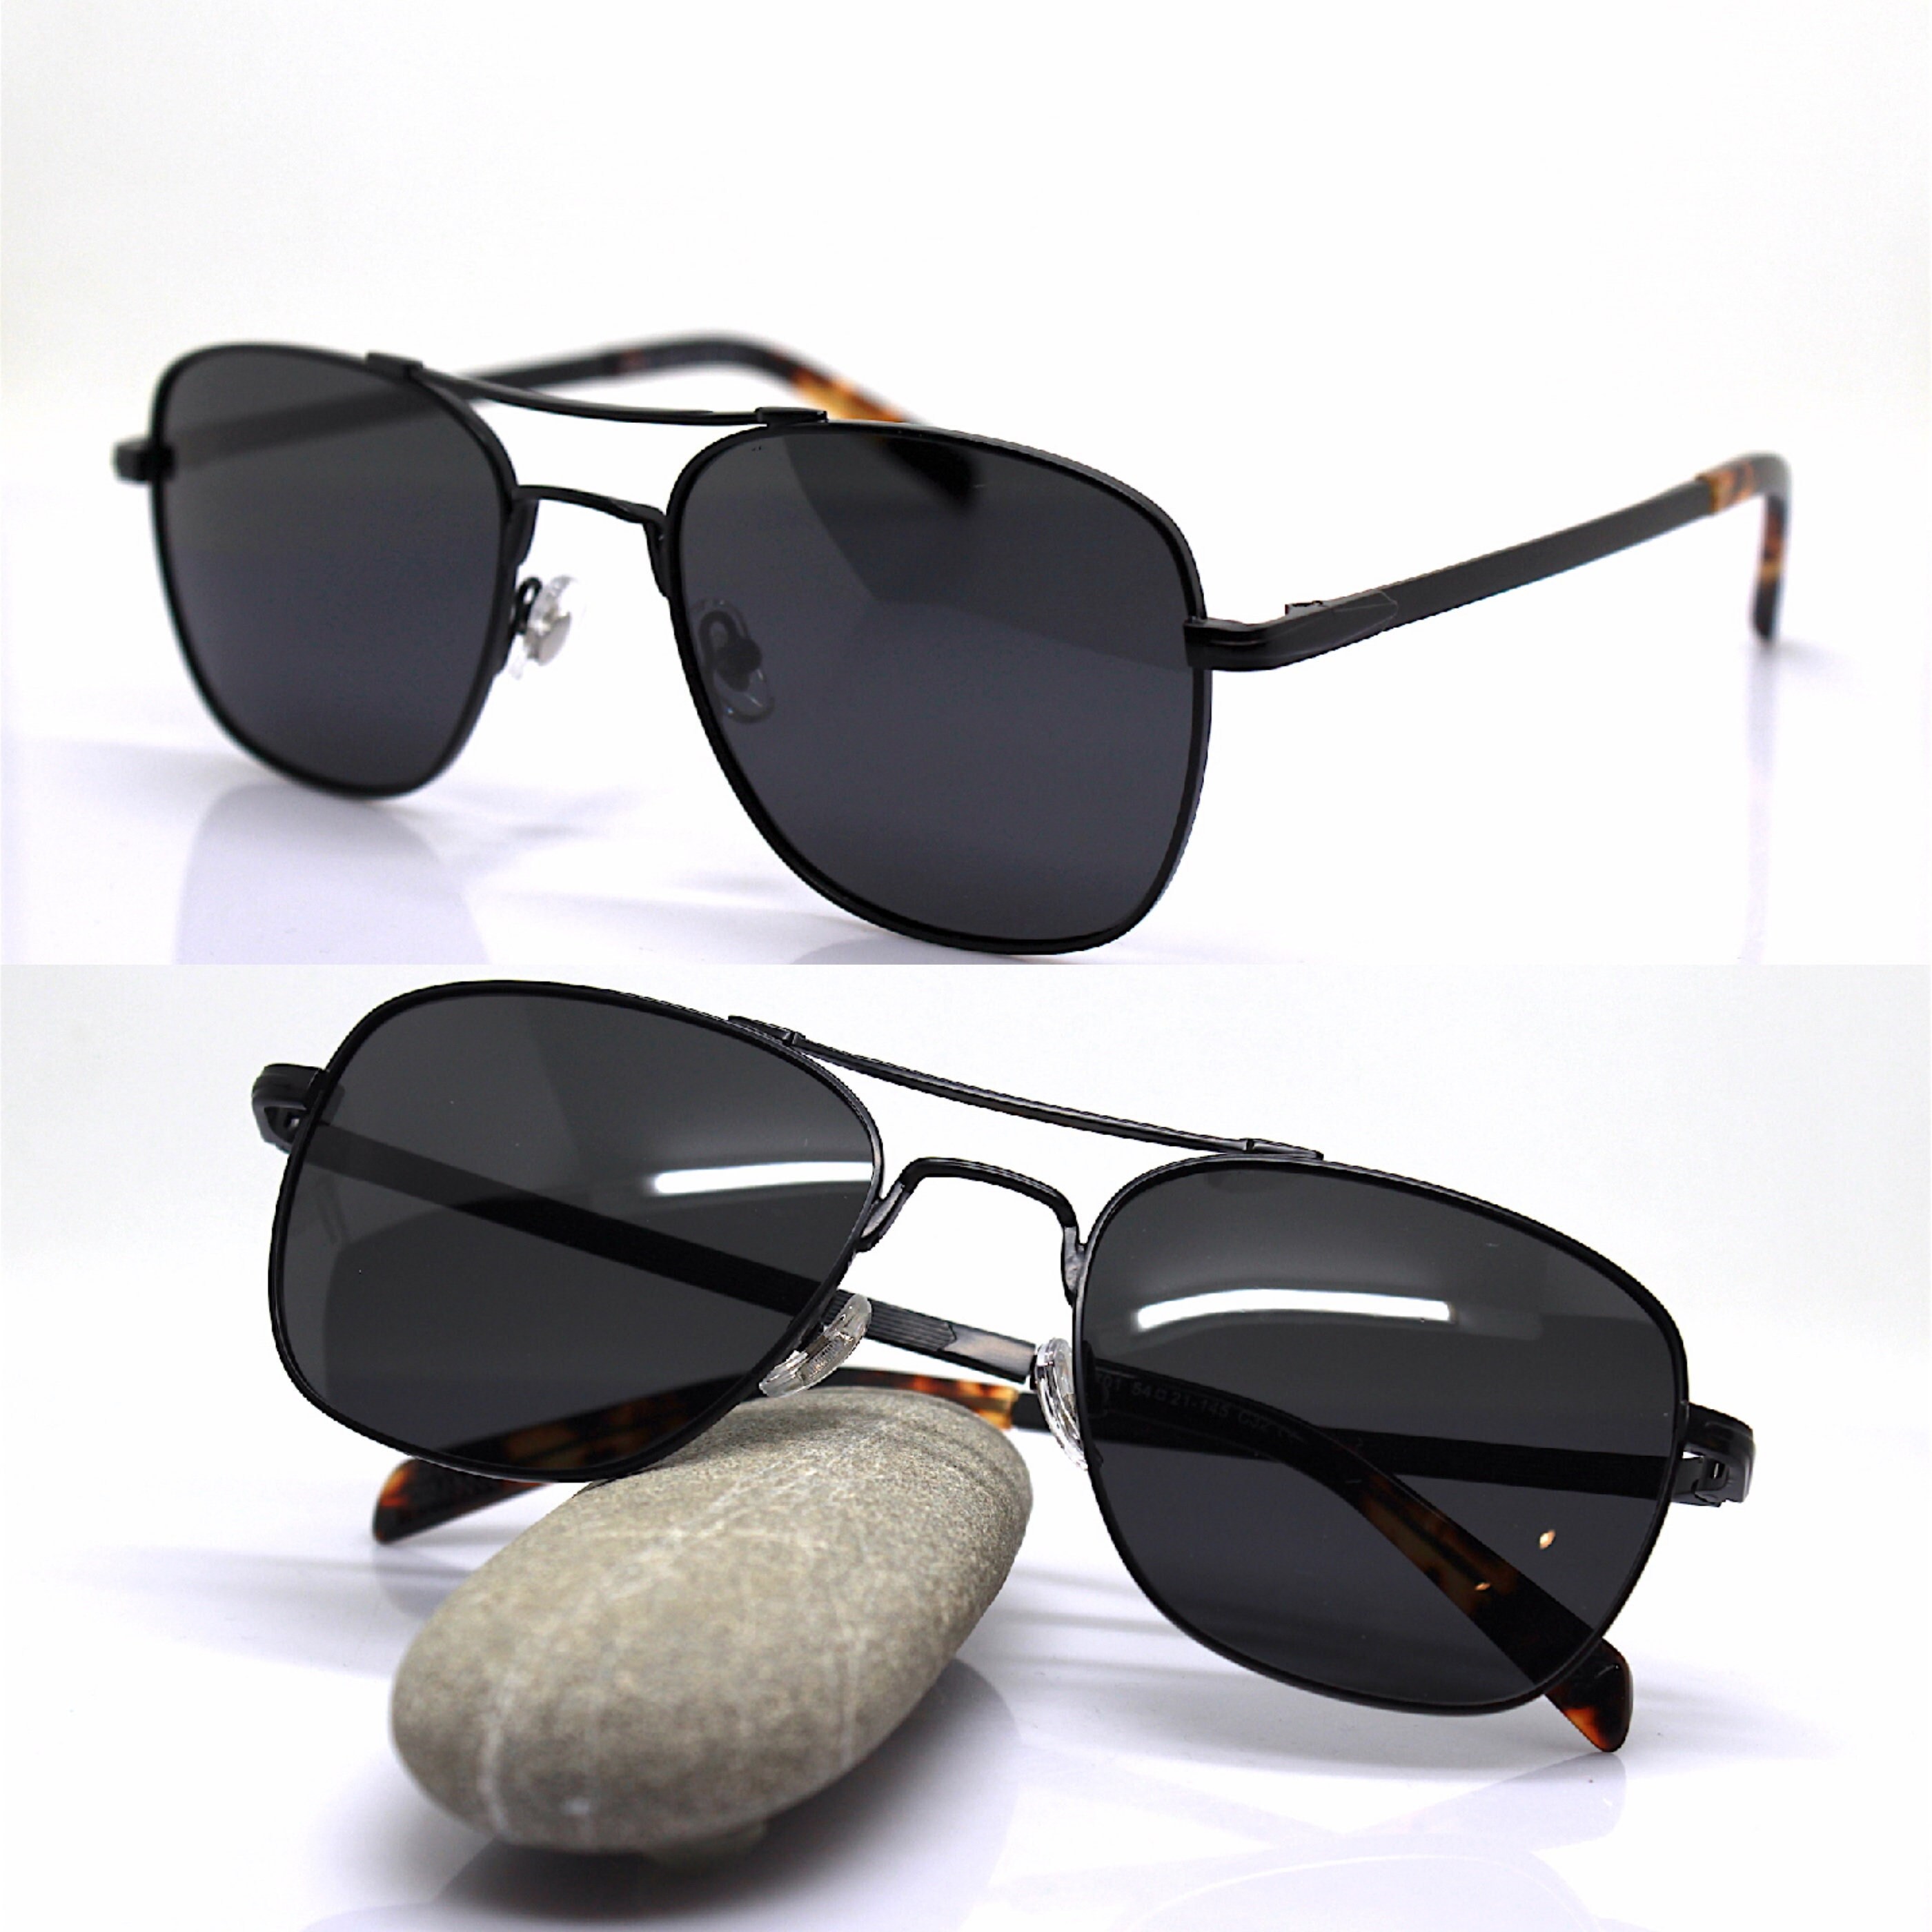 Polarized Rectangular Aviator Sunglasses for Men - Military Style